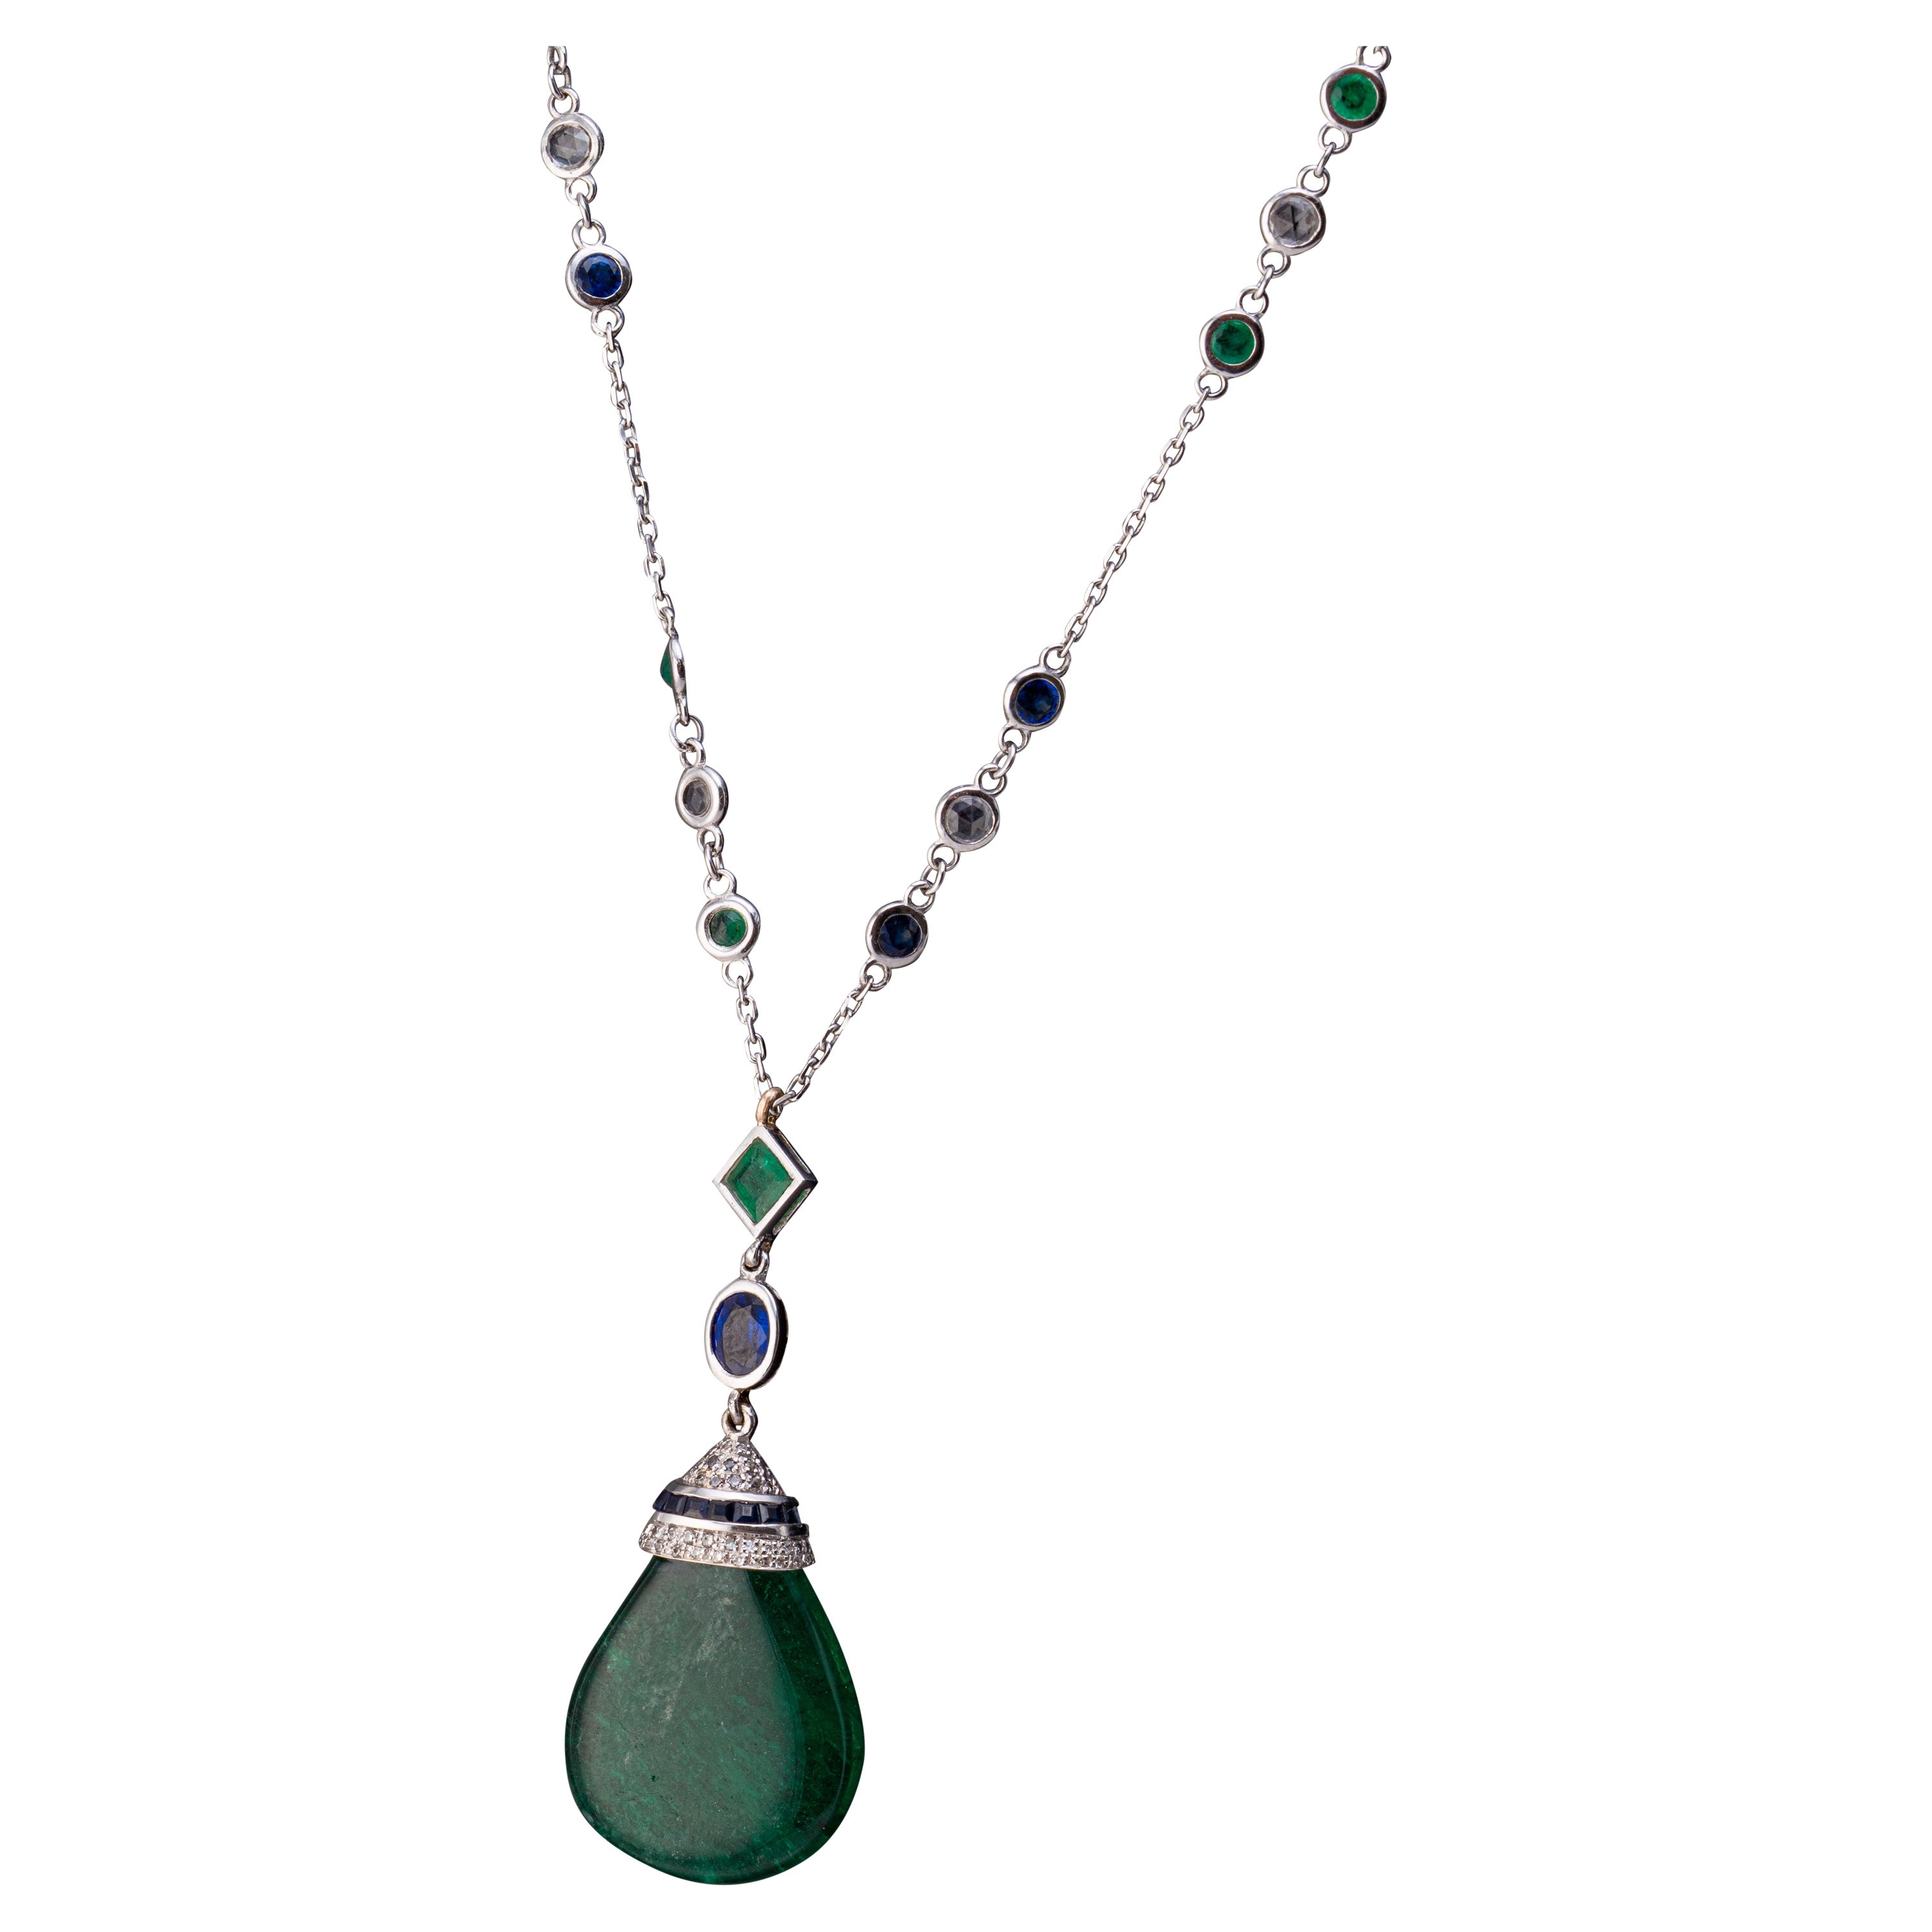 Certified 23.95 Carat Emerald Drop Pendant Necklace